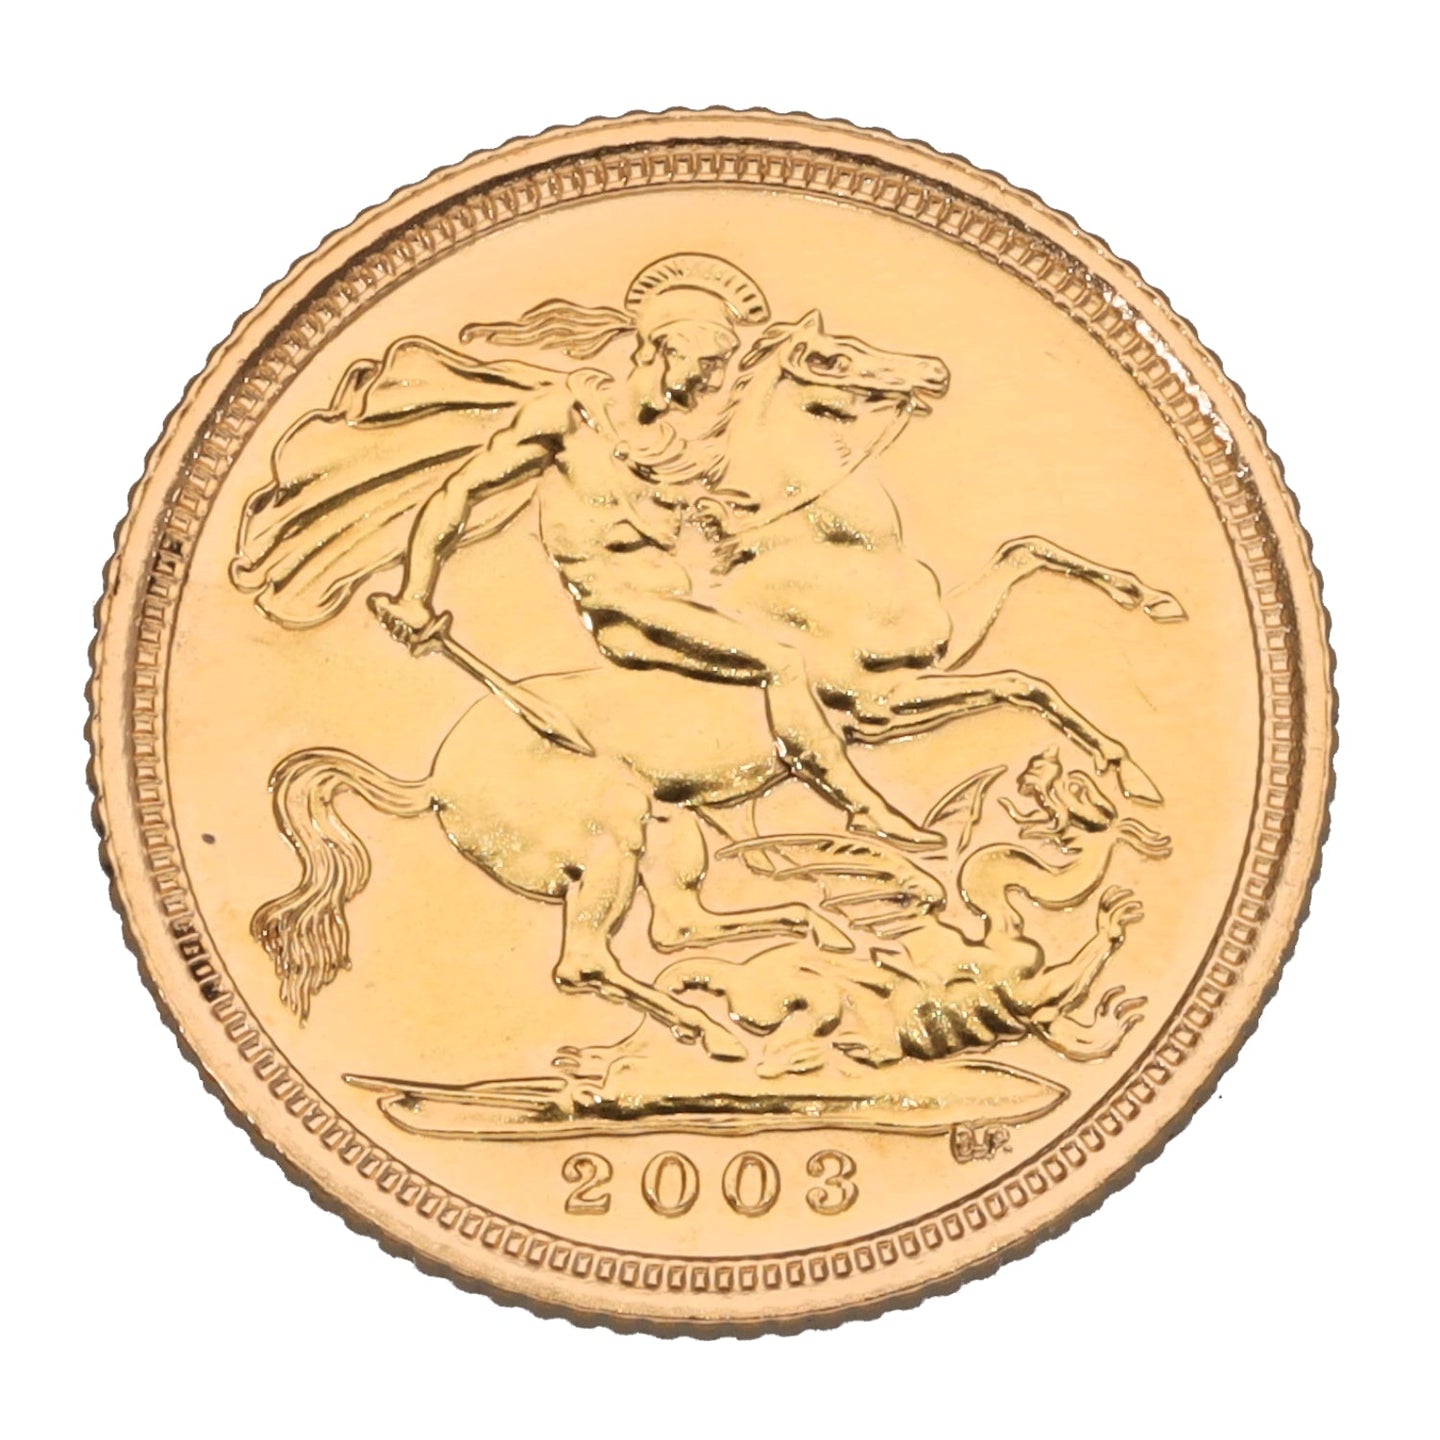 22ct Gold Queen Elizabeth II Half Sovereign Coin 2003